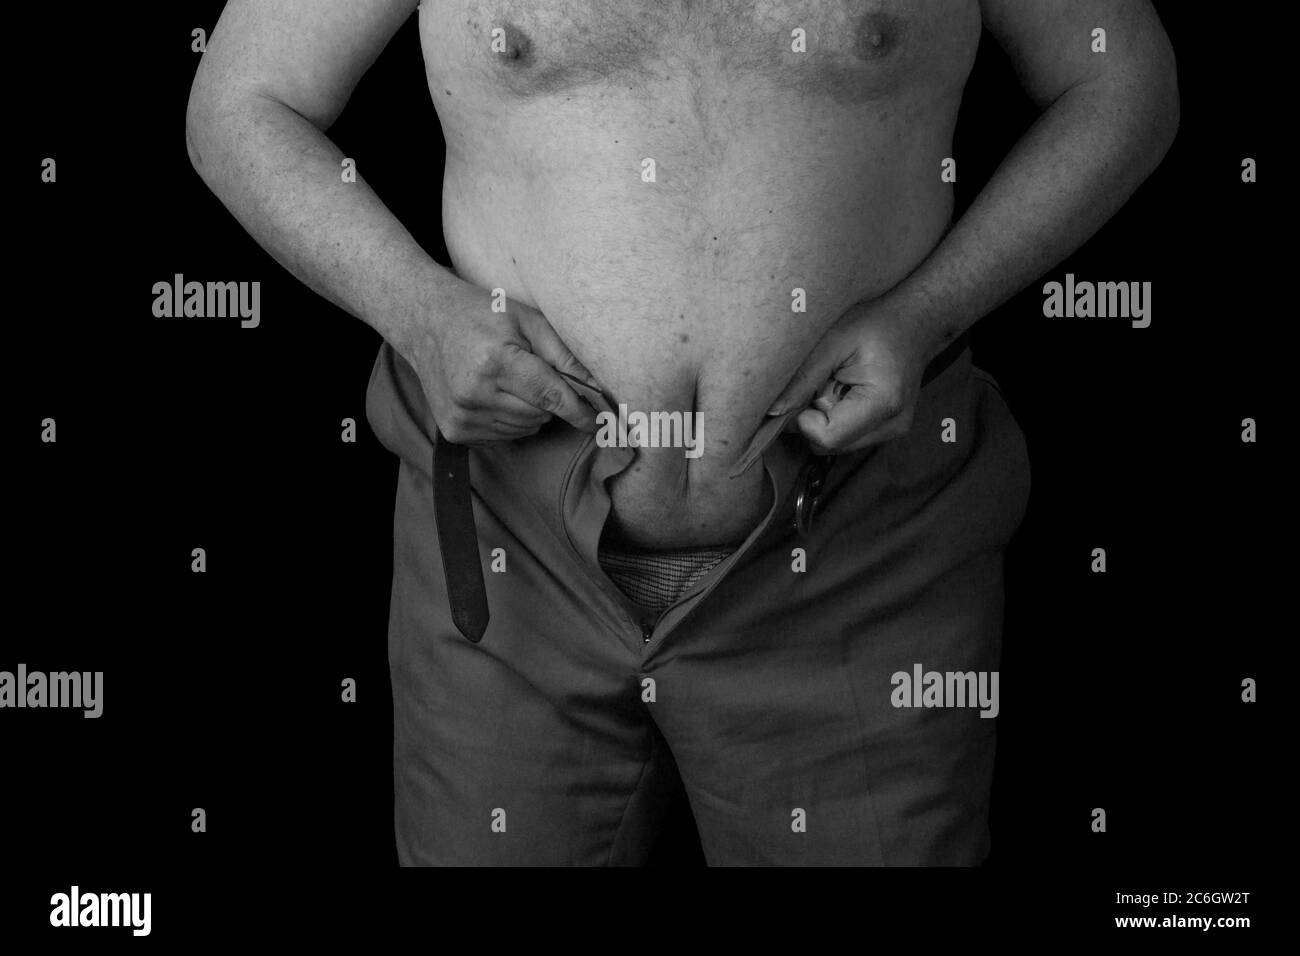 La persona in sovrappeso non può essere ferocato. Foto in bianco e nero Foto Stock